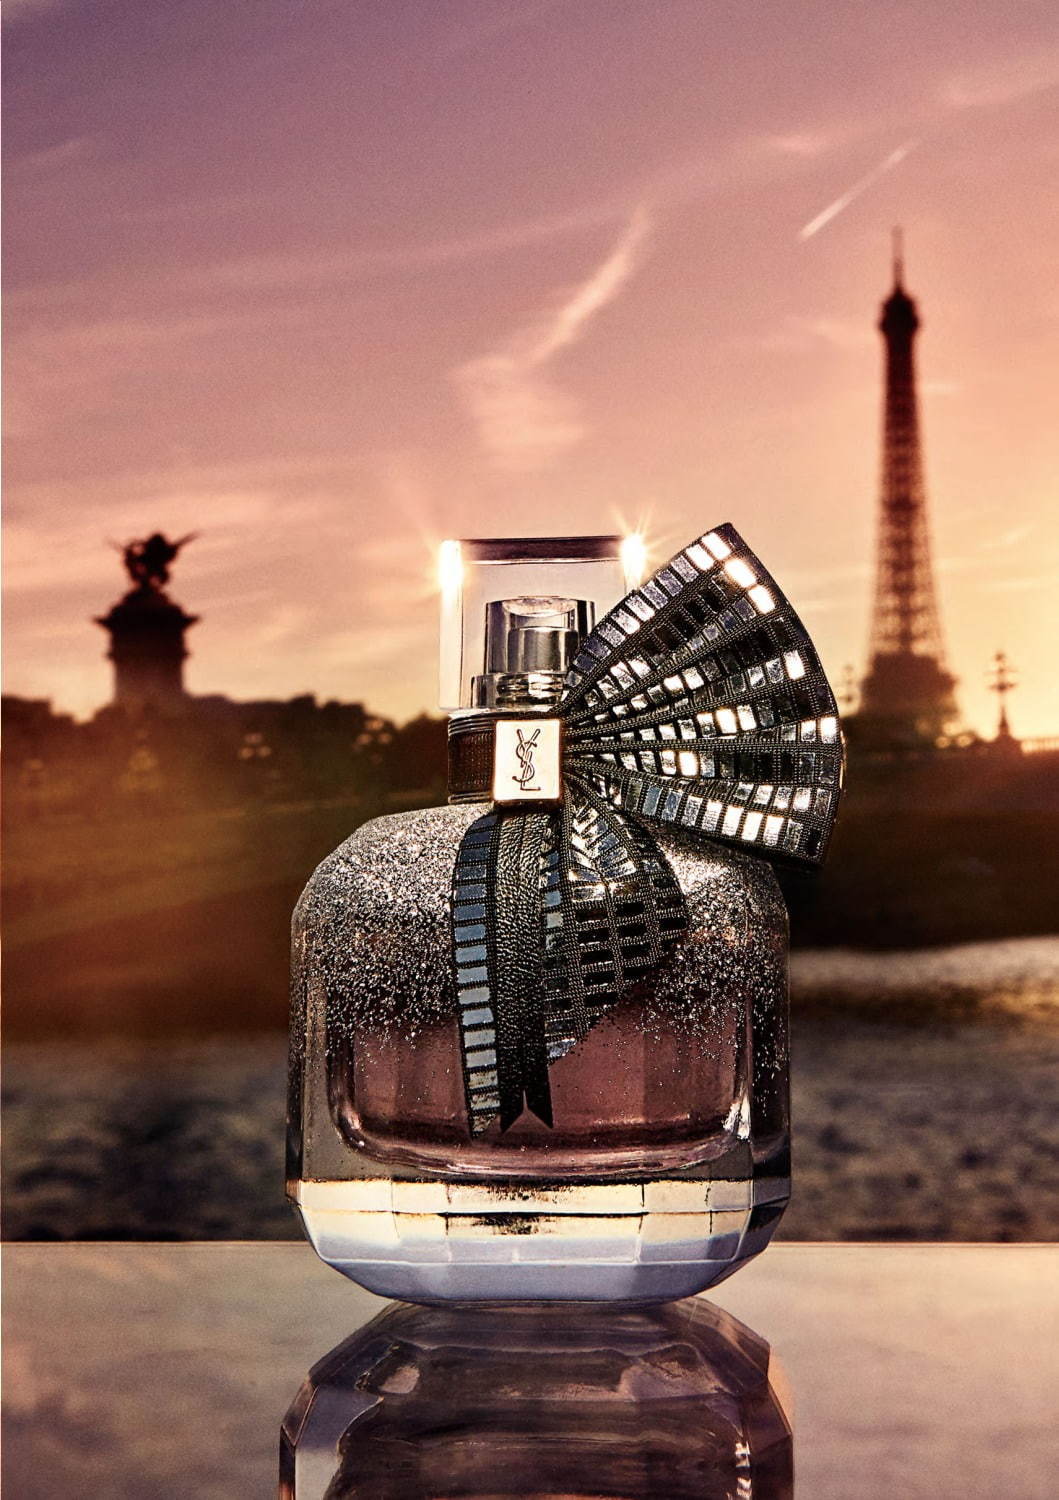 イヴ サンローラン 恋愛 がテーマの人気香水 モン パリ 夜のパリ イメージの限定デザインに ファッションプレス